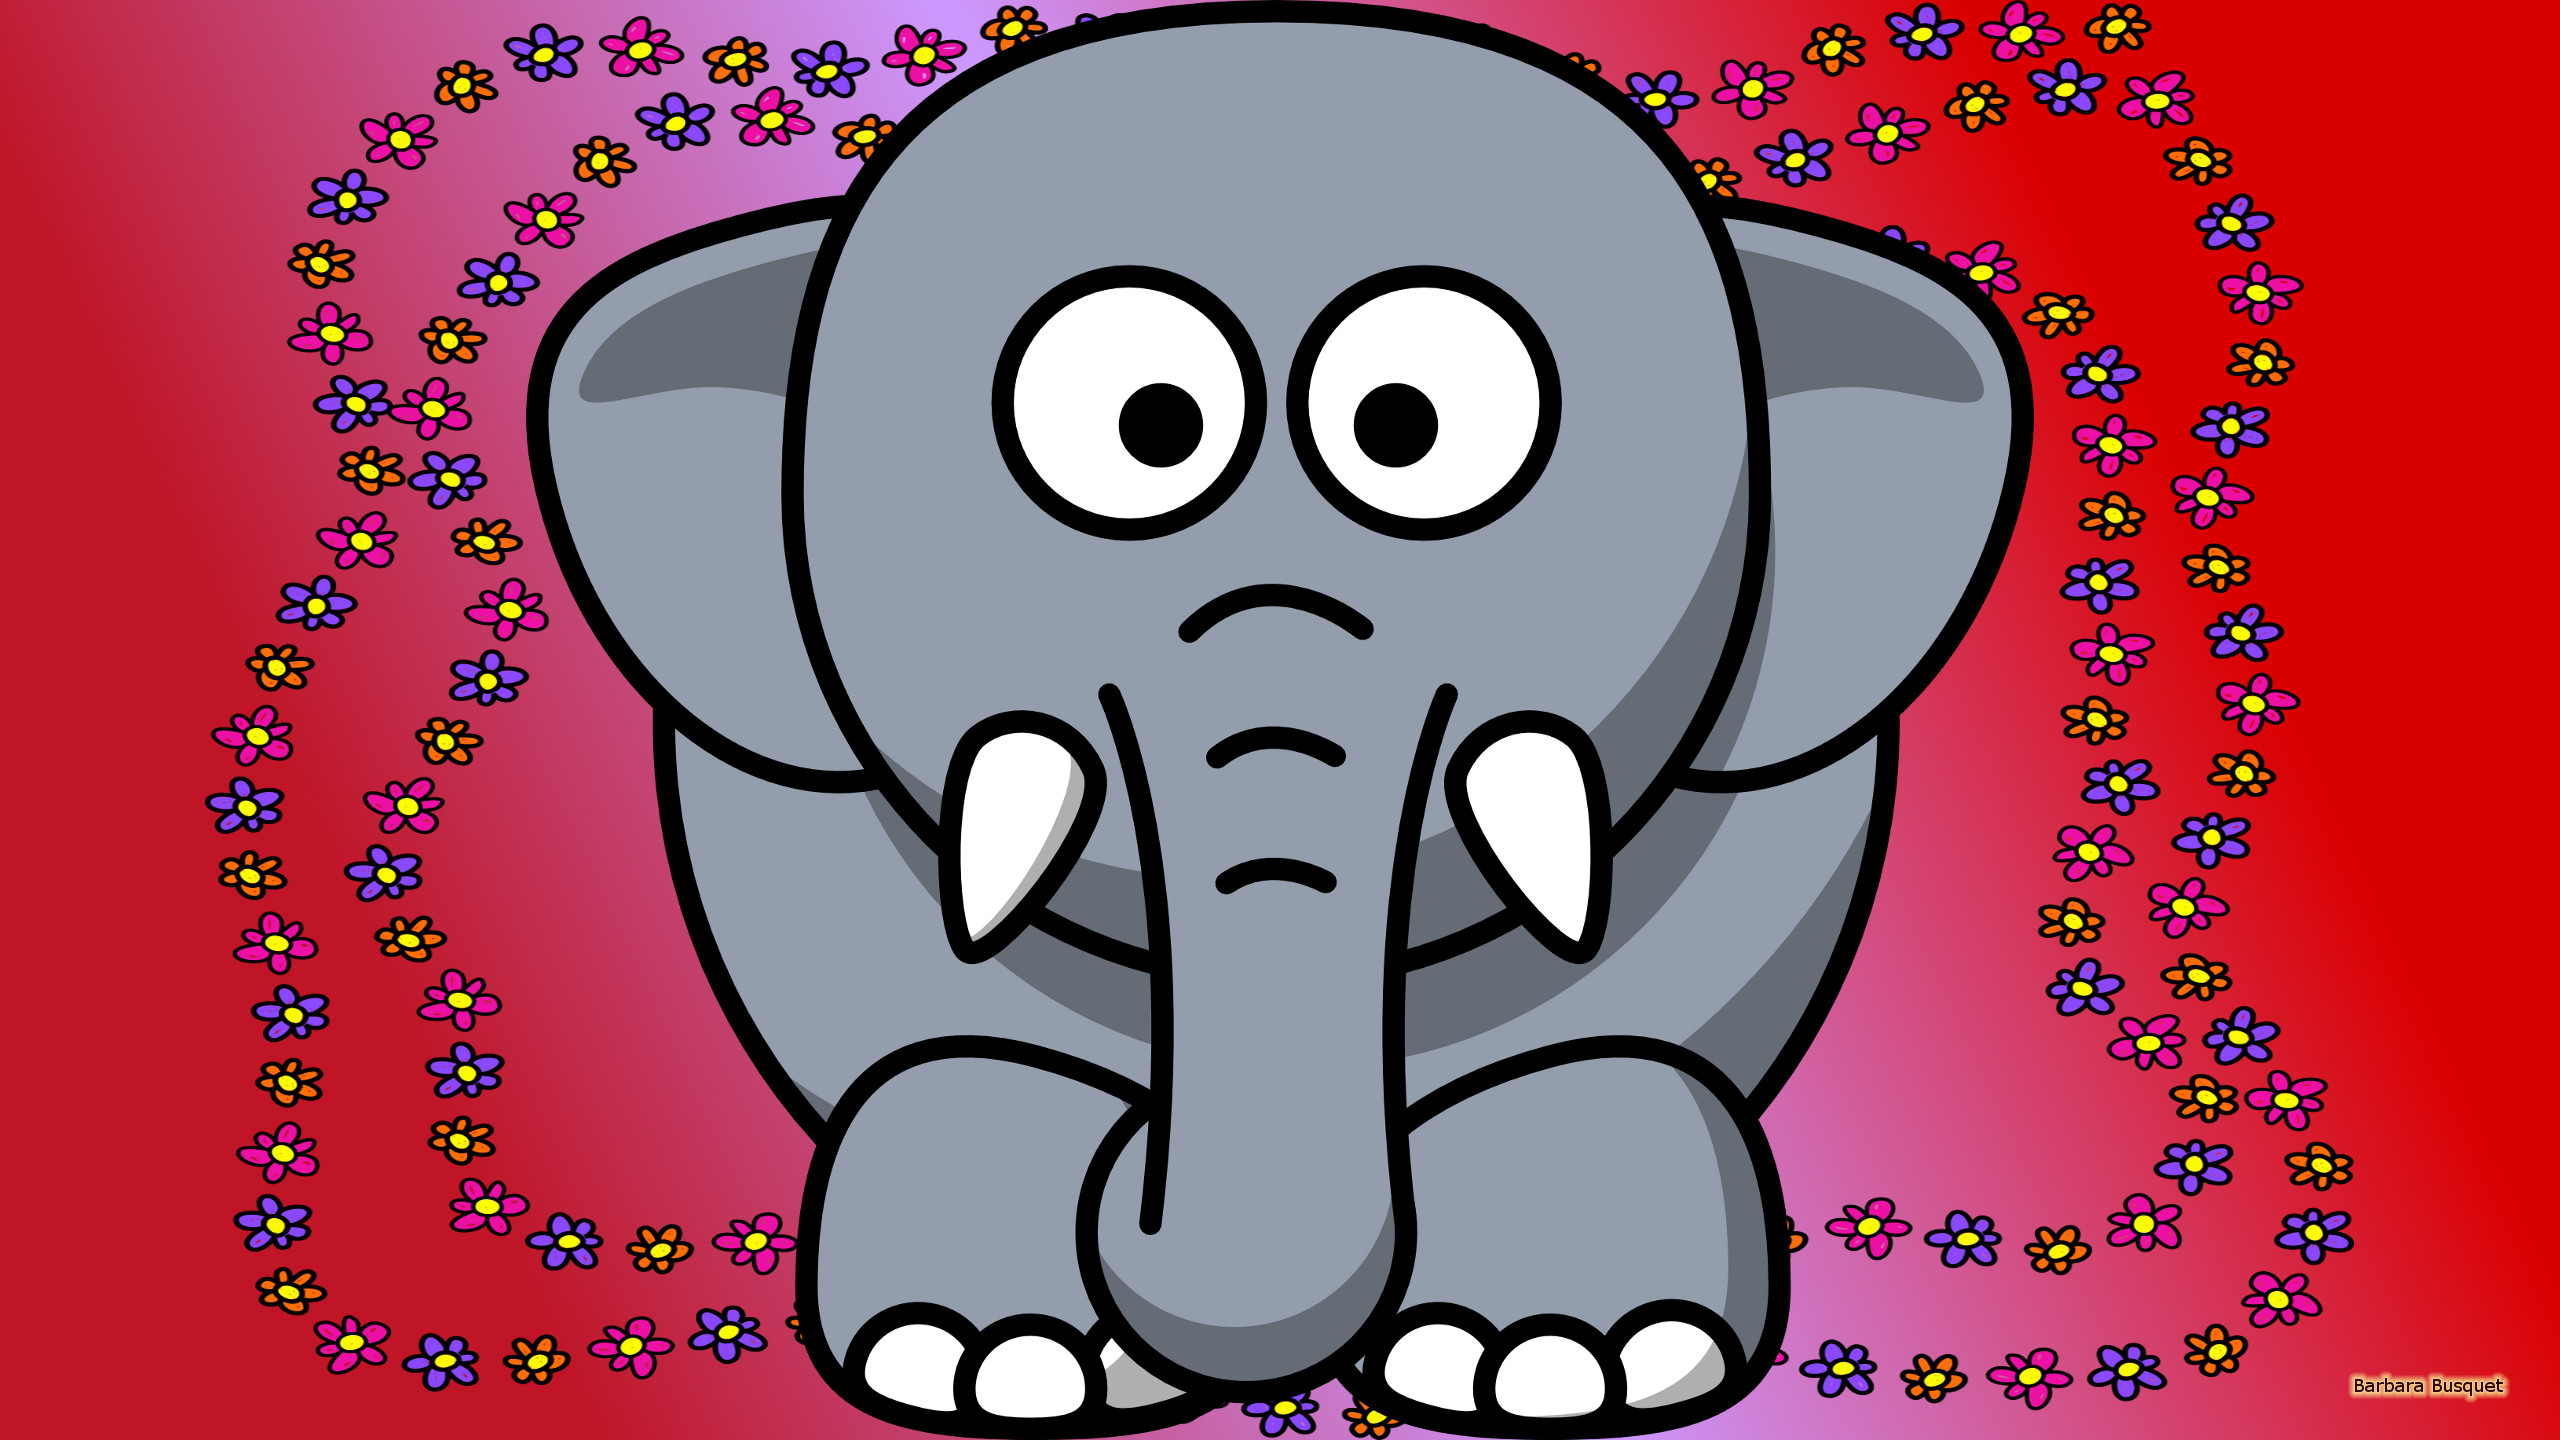 papel pintado de elefante,elefante,elefantes y mamuts,elefante indio,dibujos animados,hocico